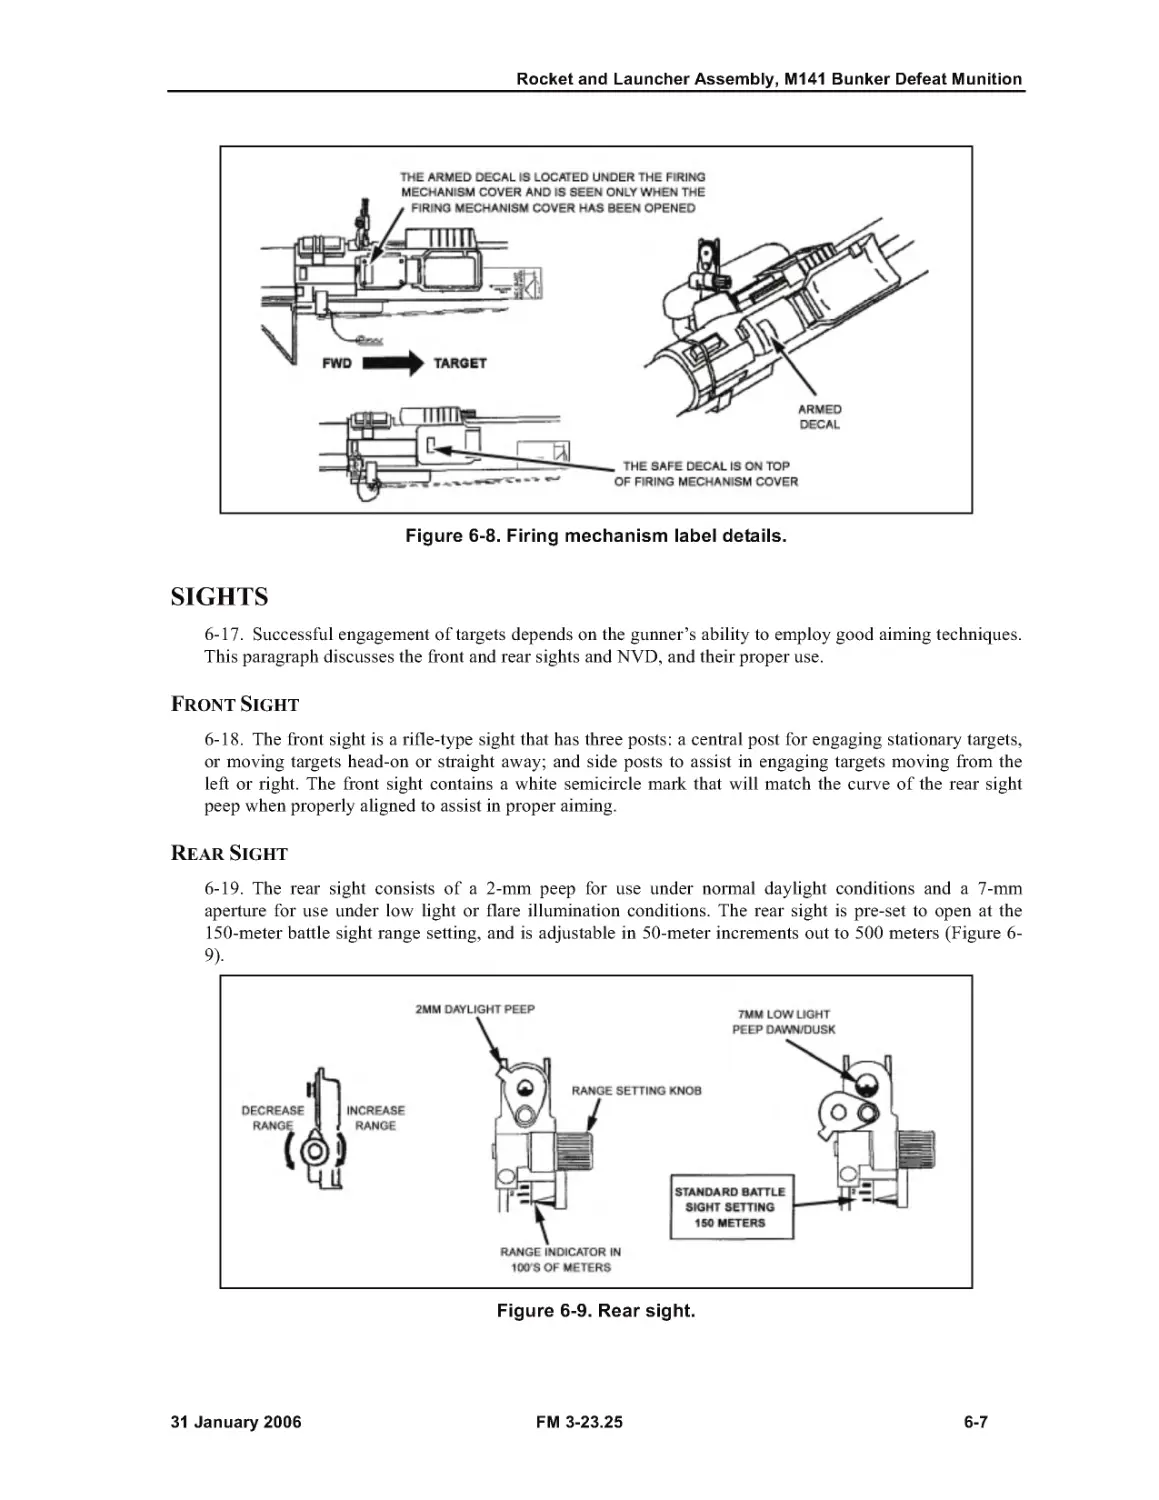 Figure 6-8. Firing mechanism label details.
Figure 6-9. Rear sight.
SIGHTS